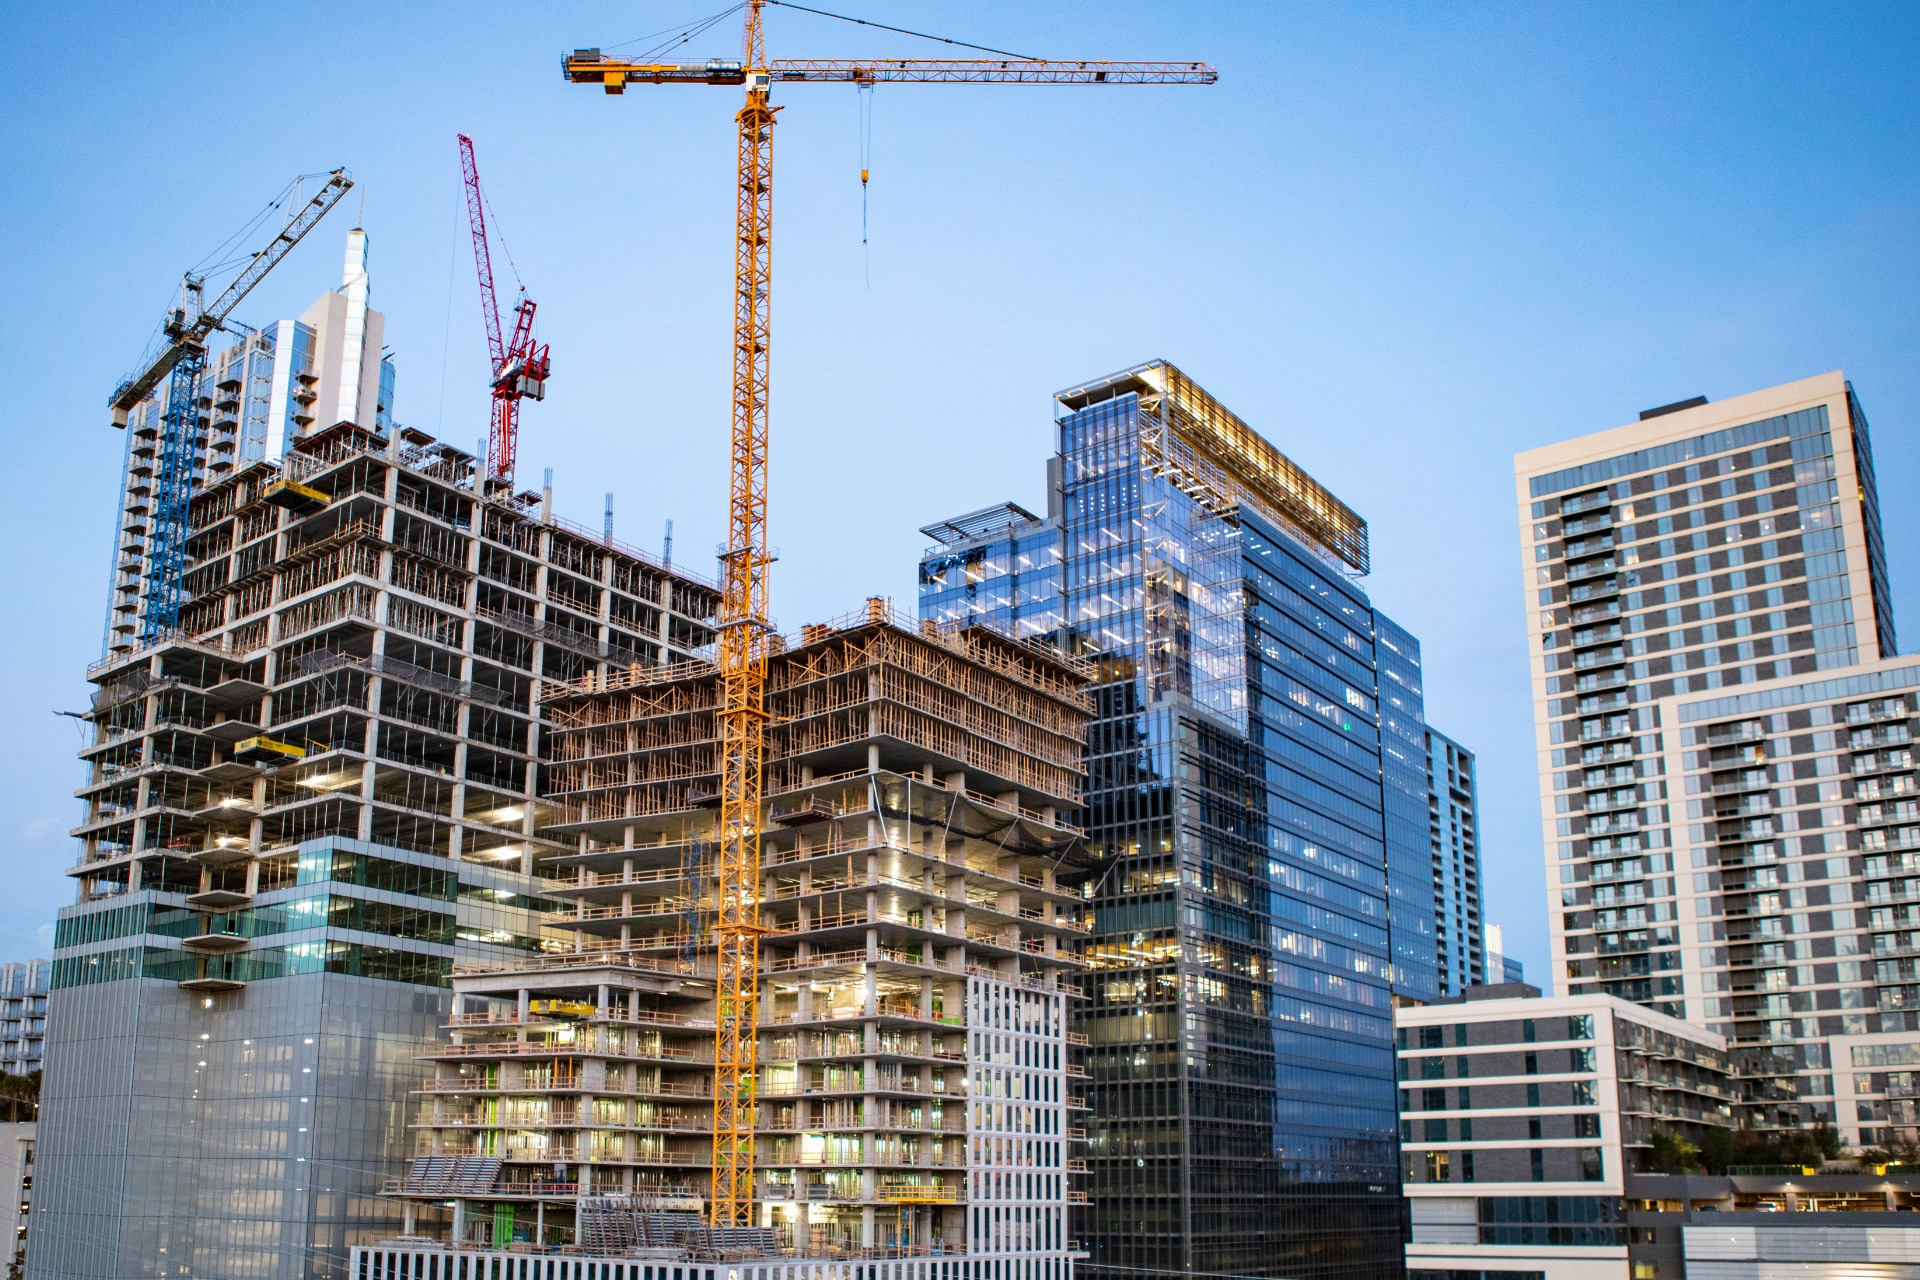 Construction Defect Litigation